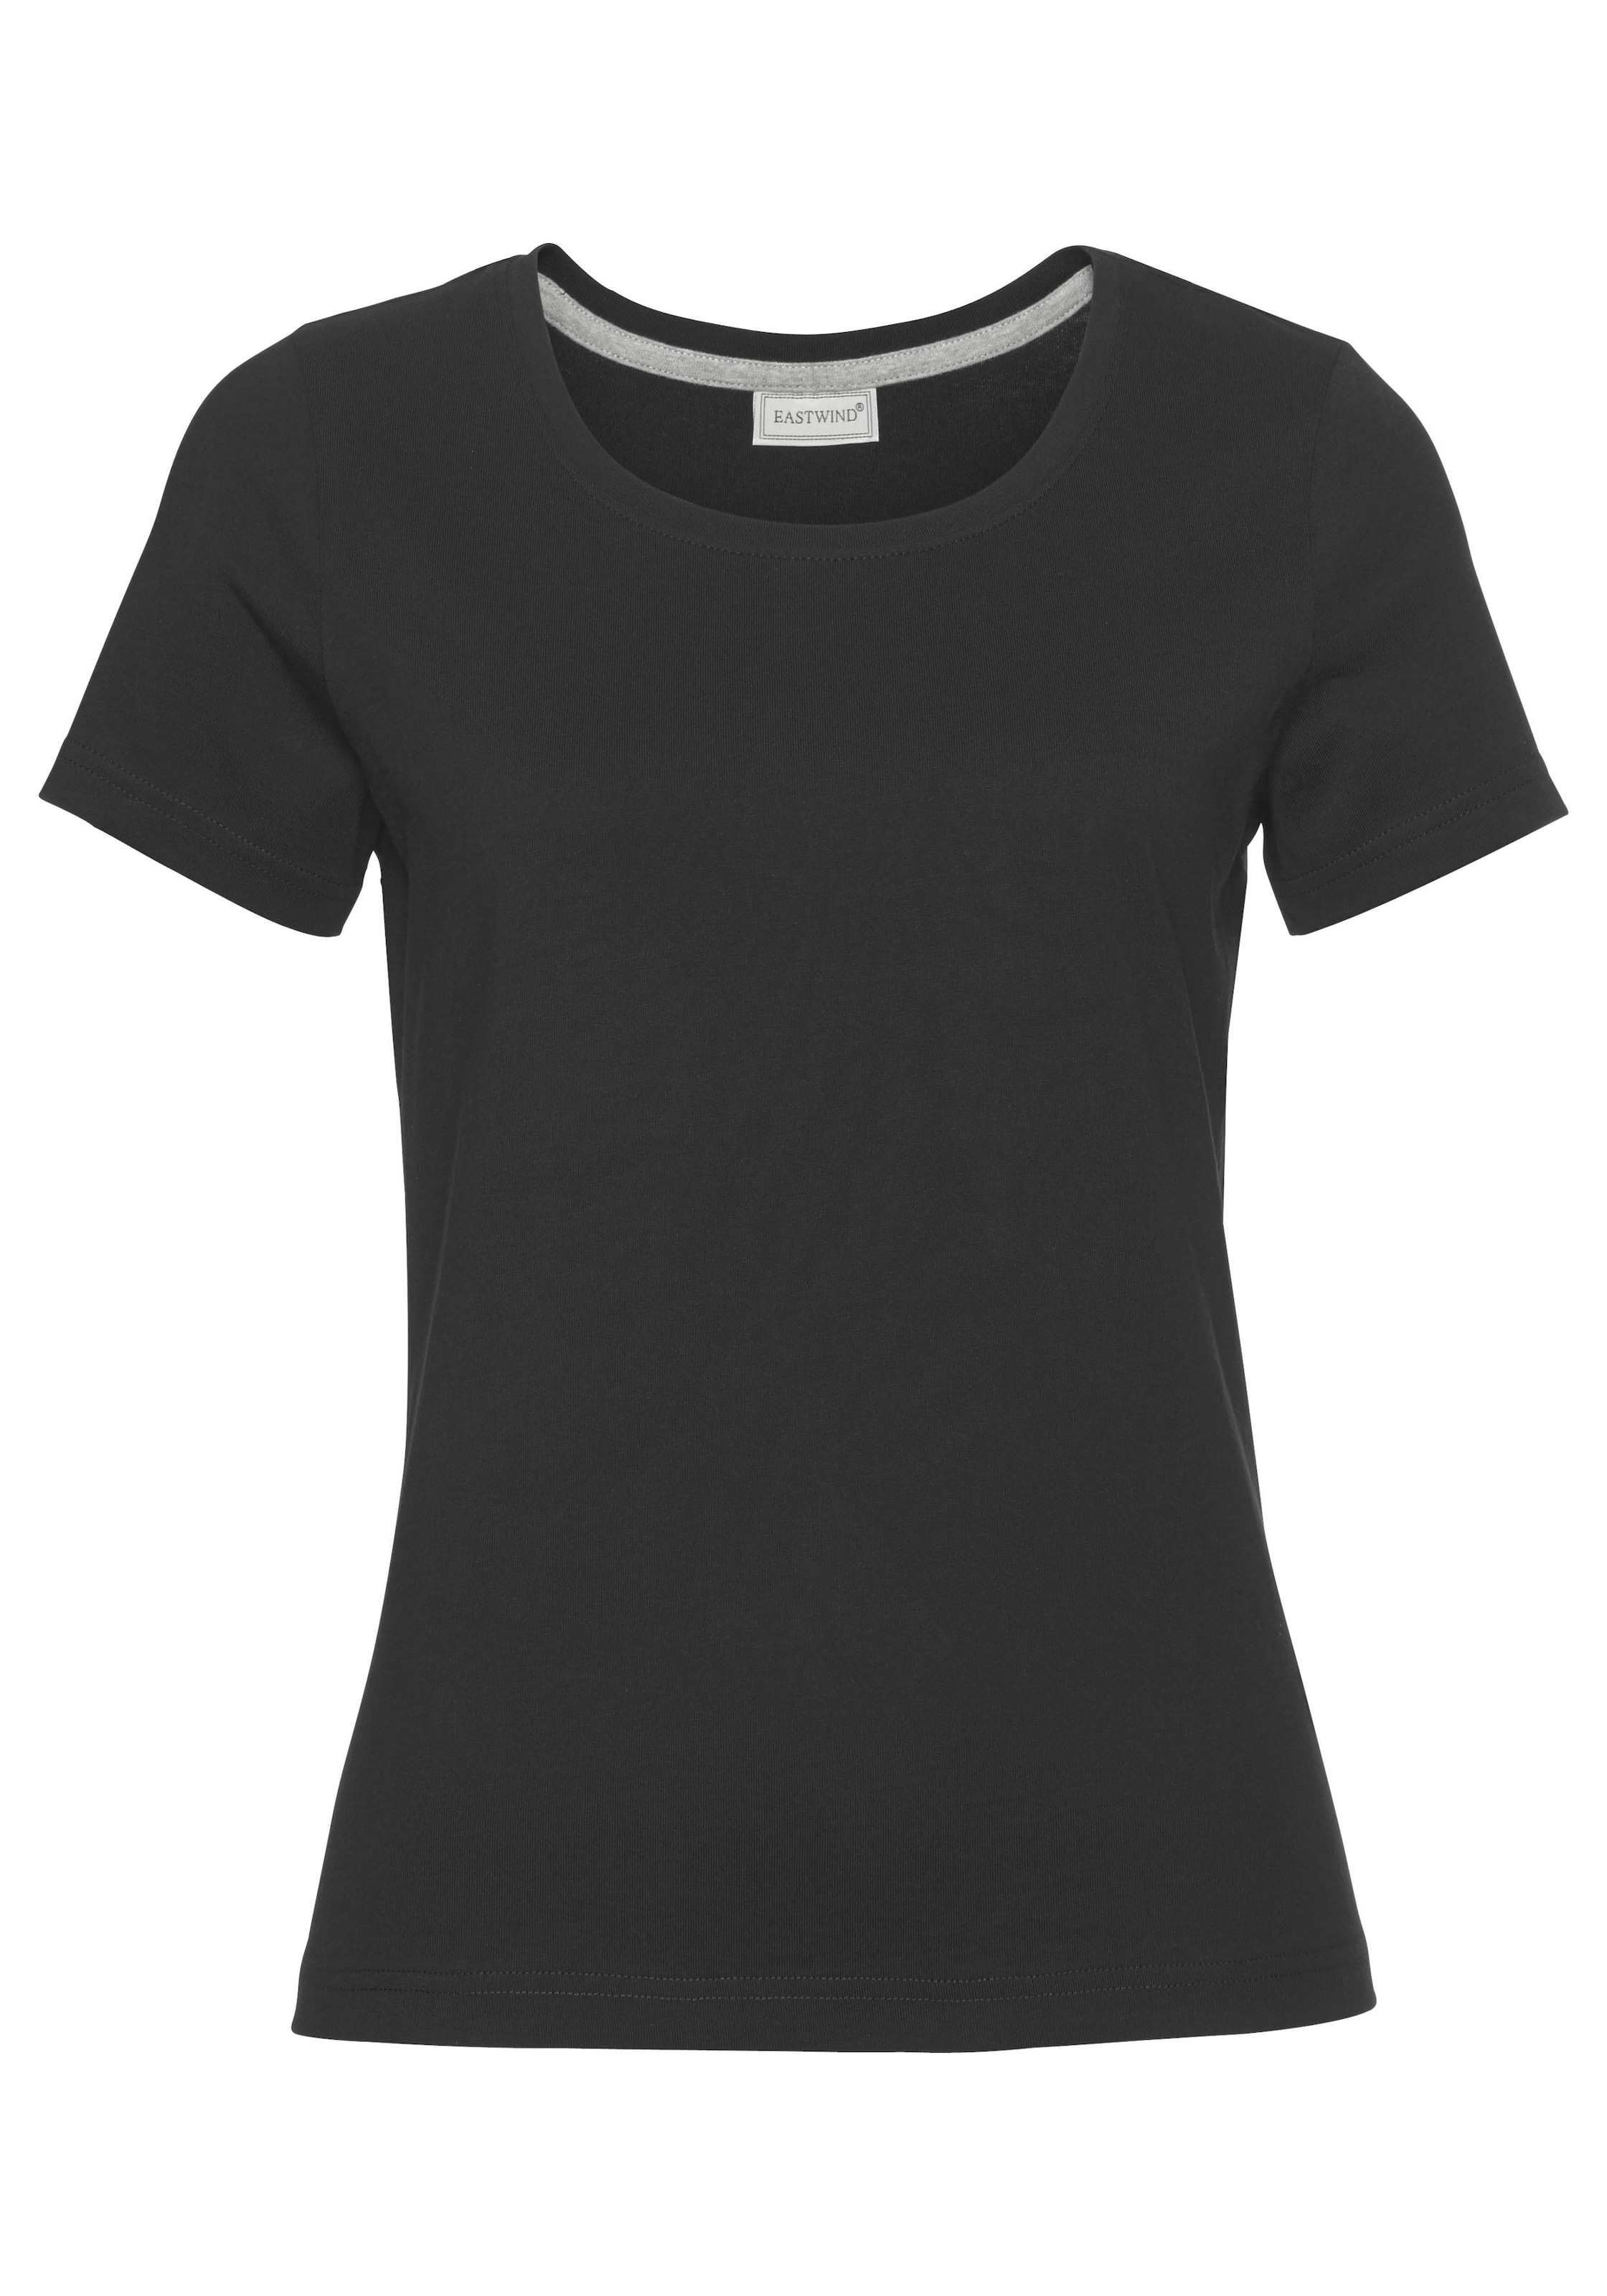 Eastwind T-Shirt, Online-Shop 3er-Pack) (Spar-Set, im kaufen